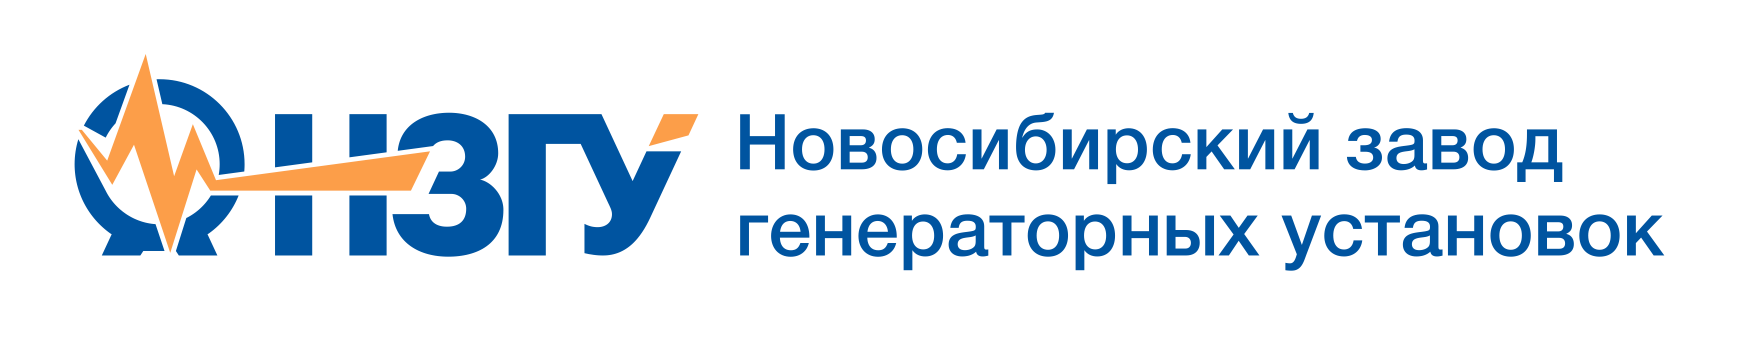 Новосибирский Завод Генераторных Установок (НЗГУ) 